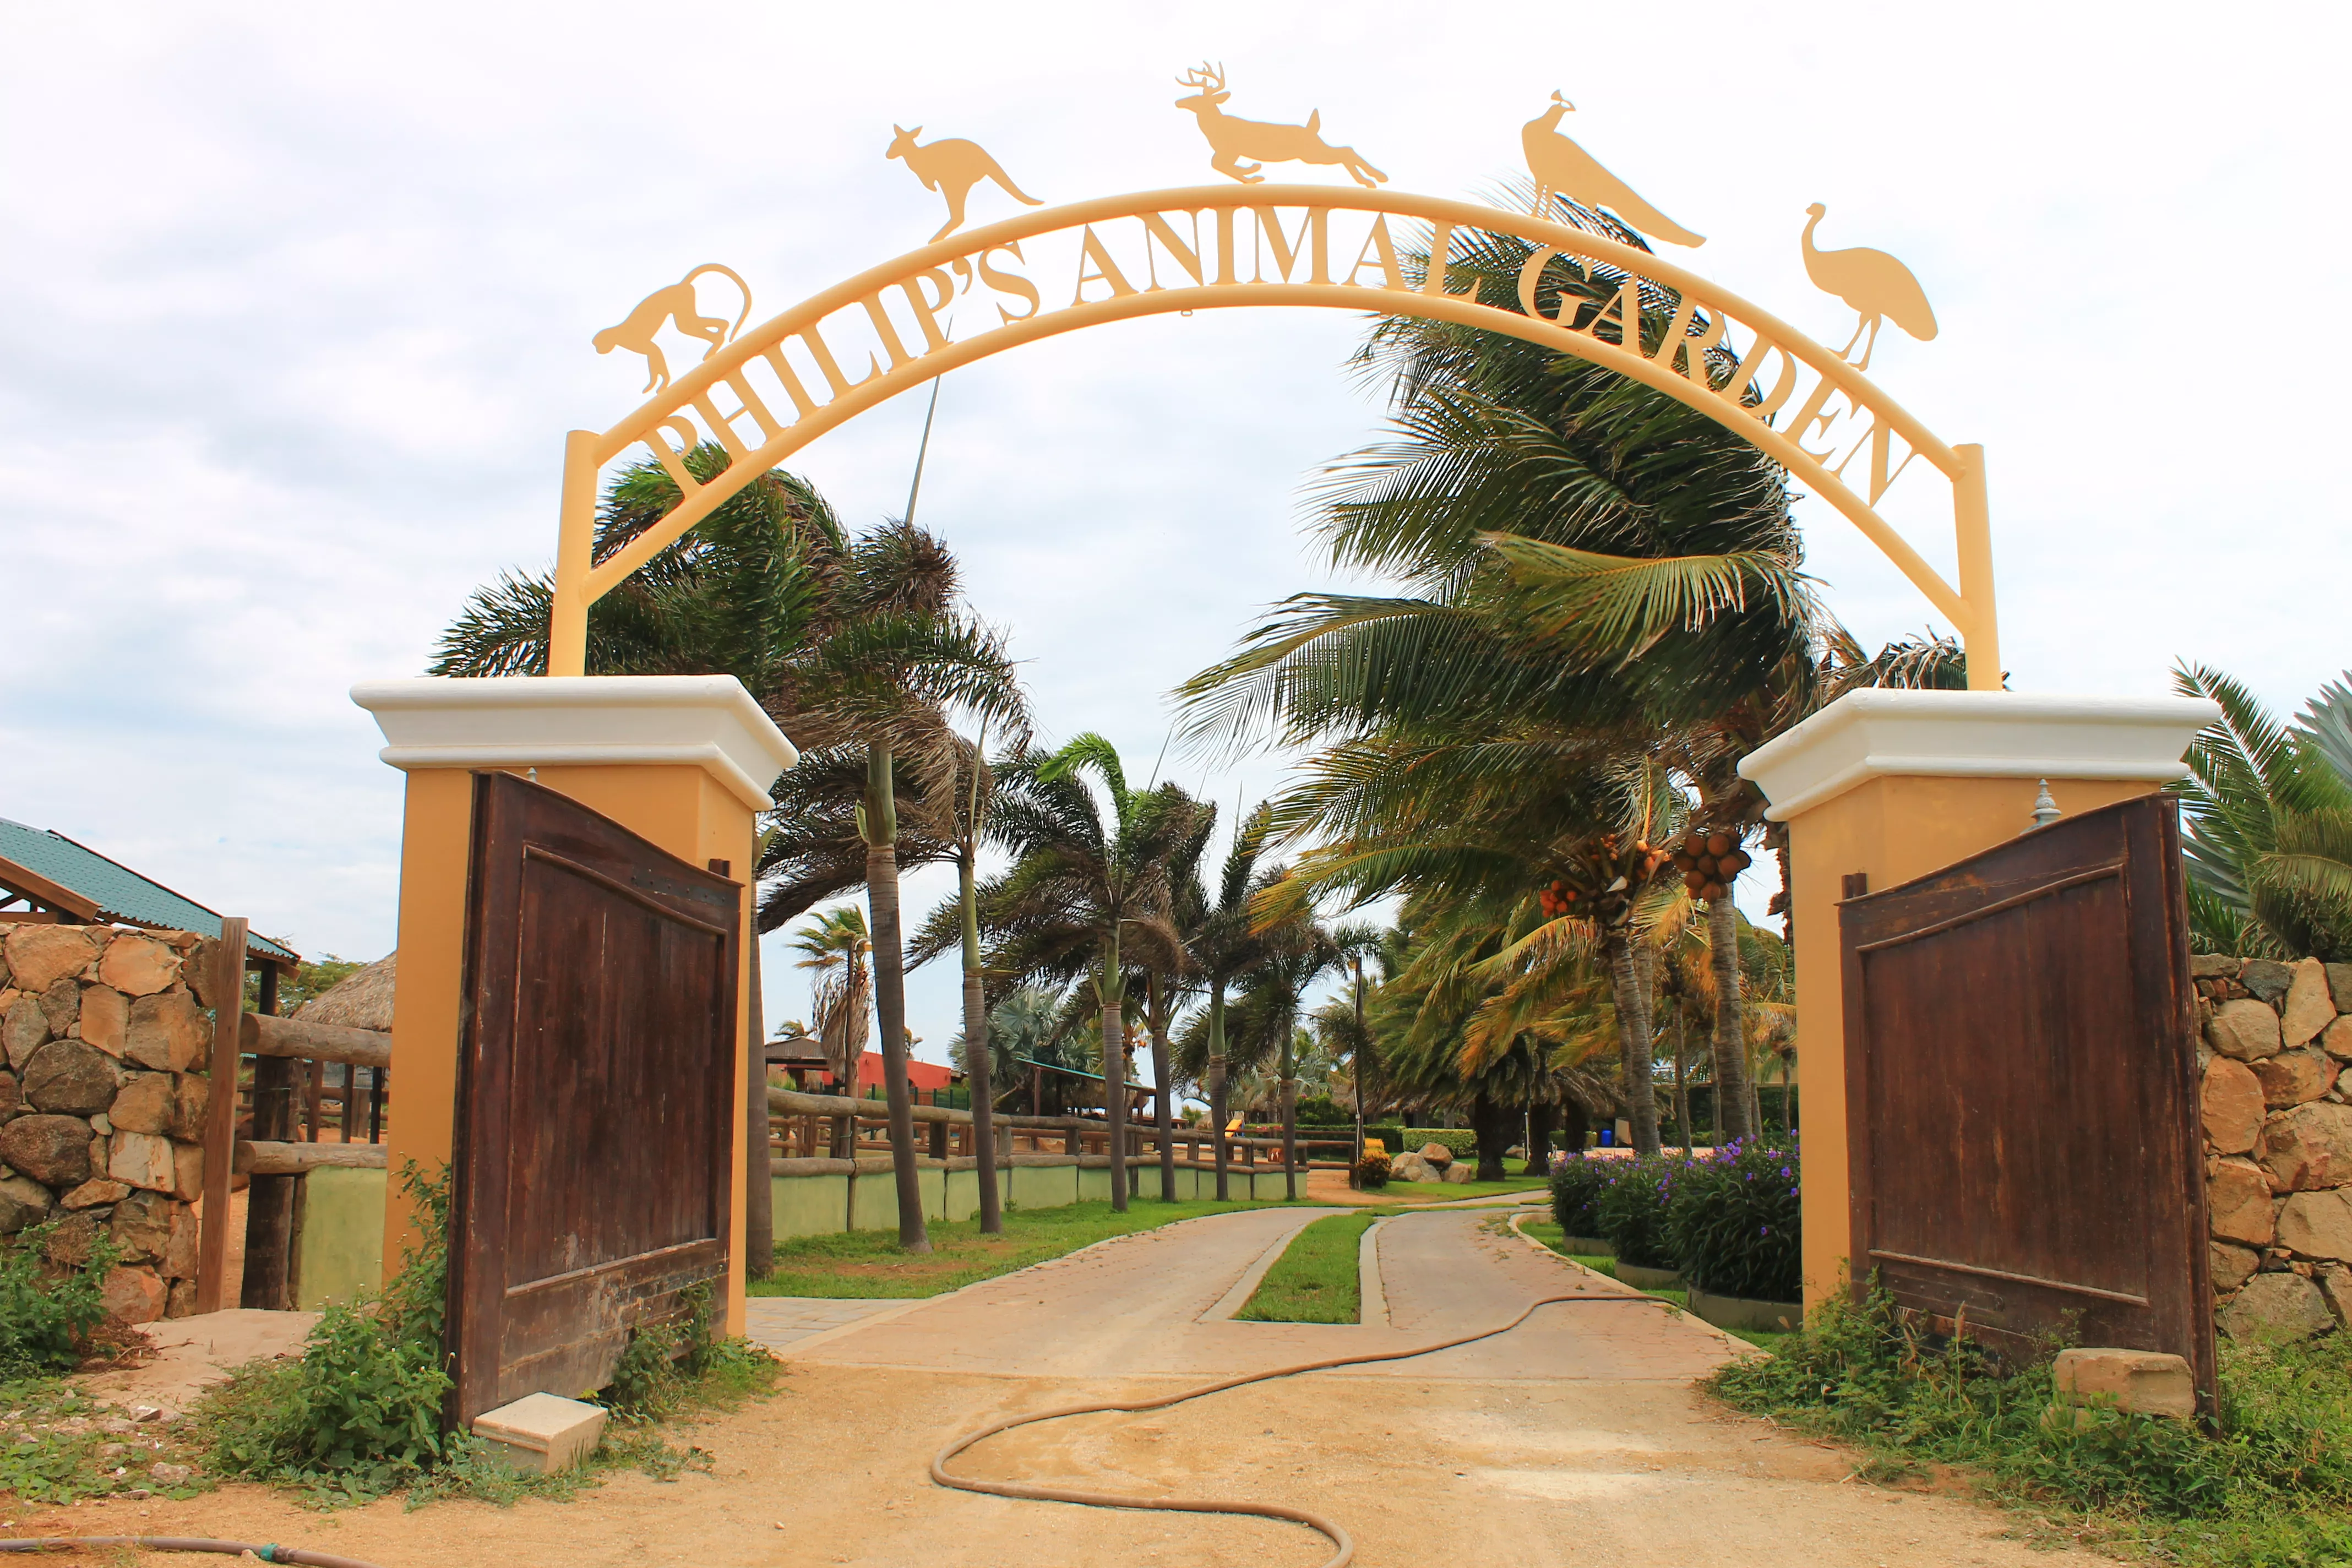 Philips Animal Garden in Aruba, Caribbean | Zoos & Sanctuaries - Rated 3.7